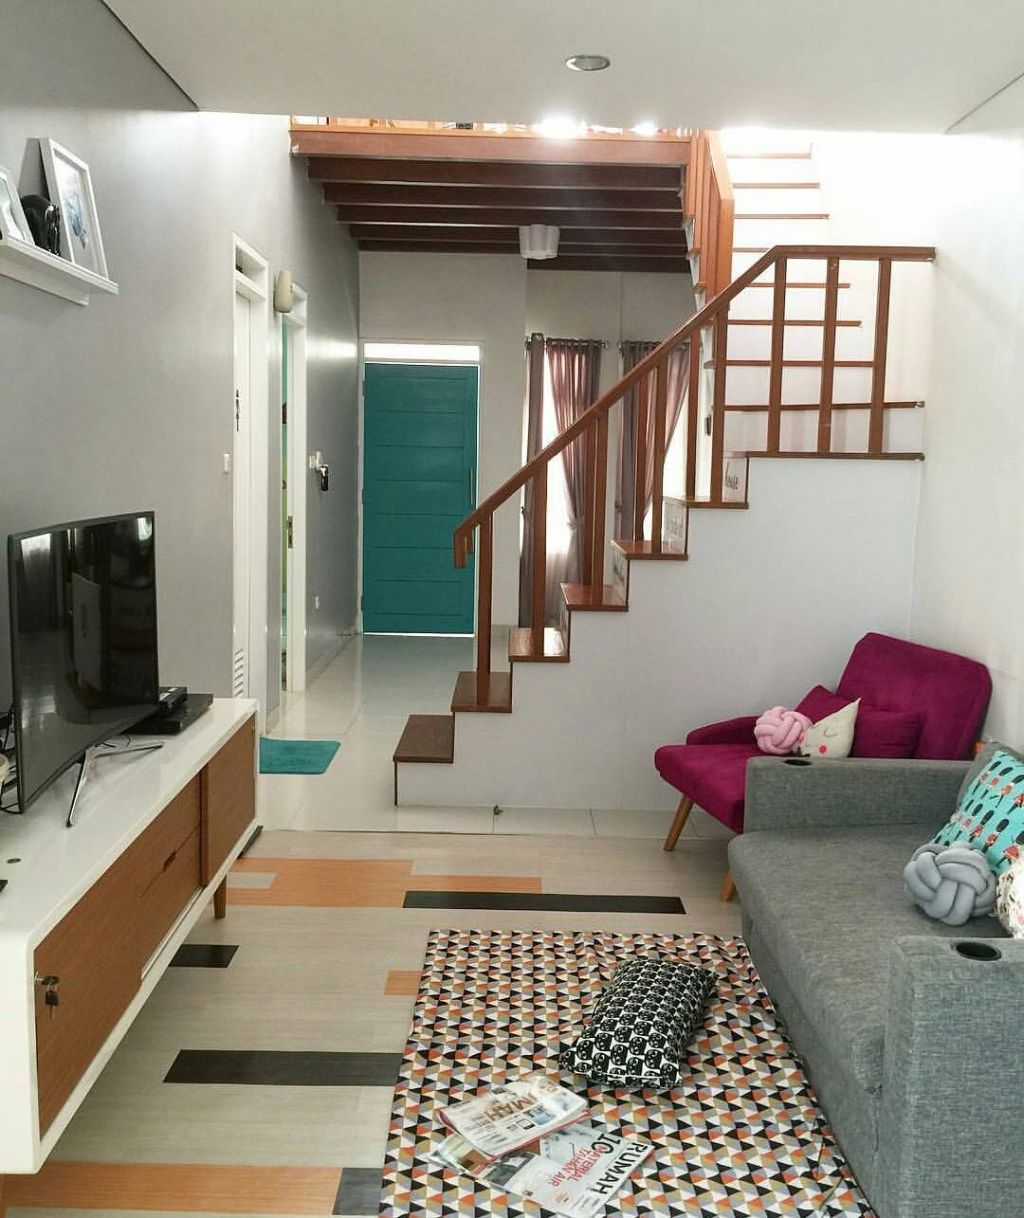 desain interior ruang keluarga minimalis